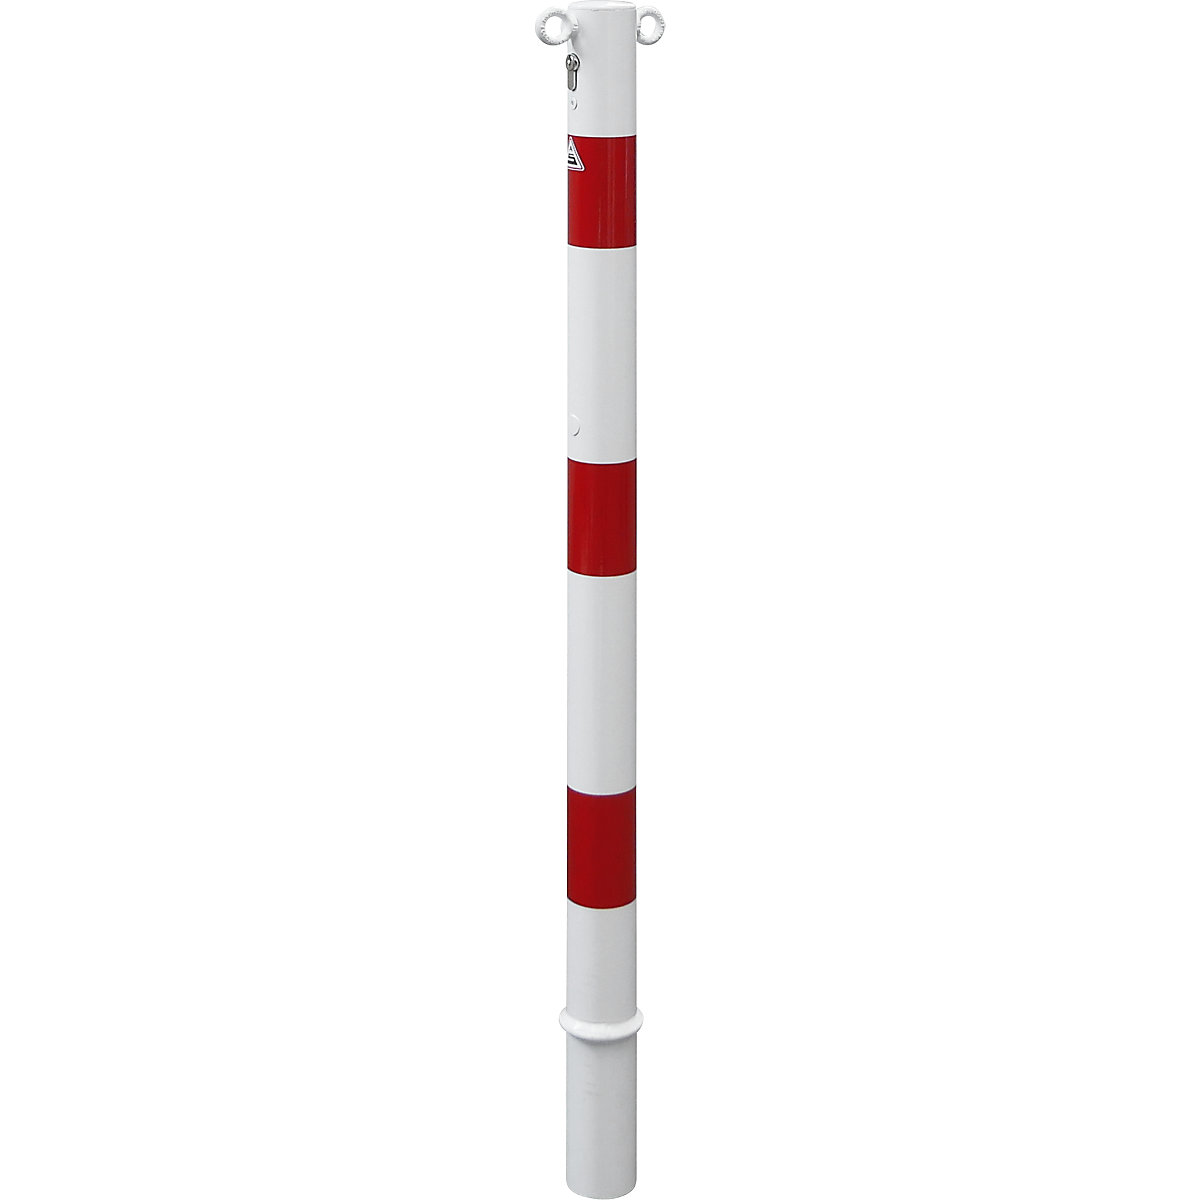 Absperrpfosten, Ø 60 mm, weiß / rot, herausnehmbar mit Profilzylinder, mit 2 Ösen